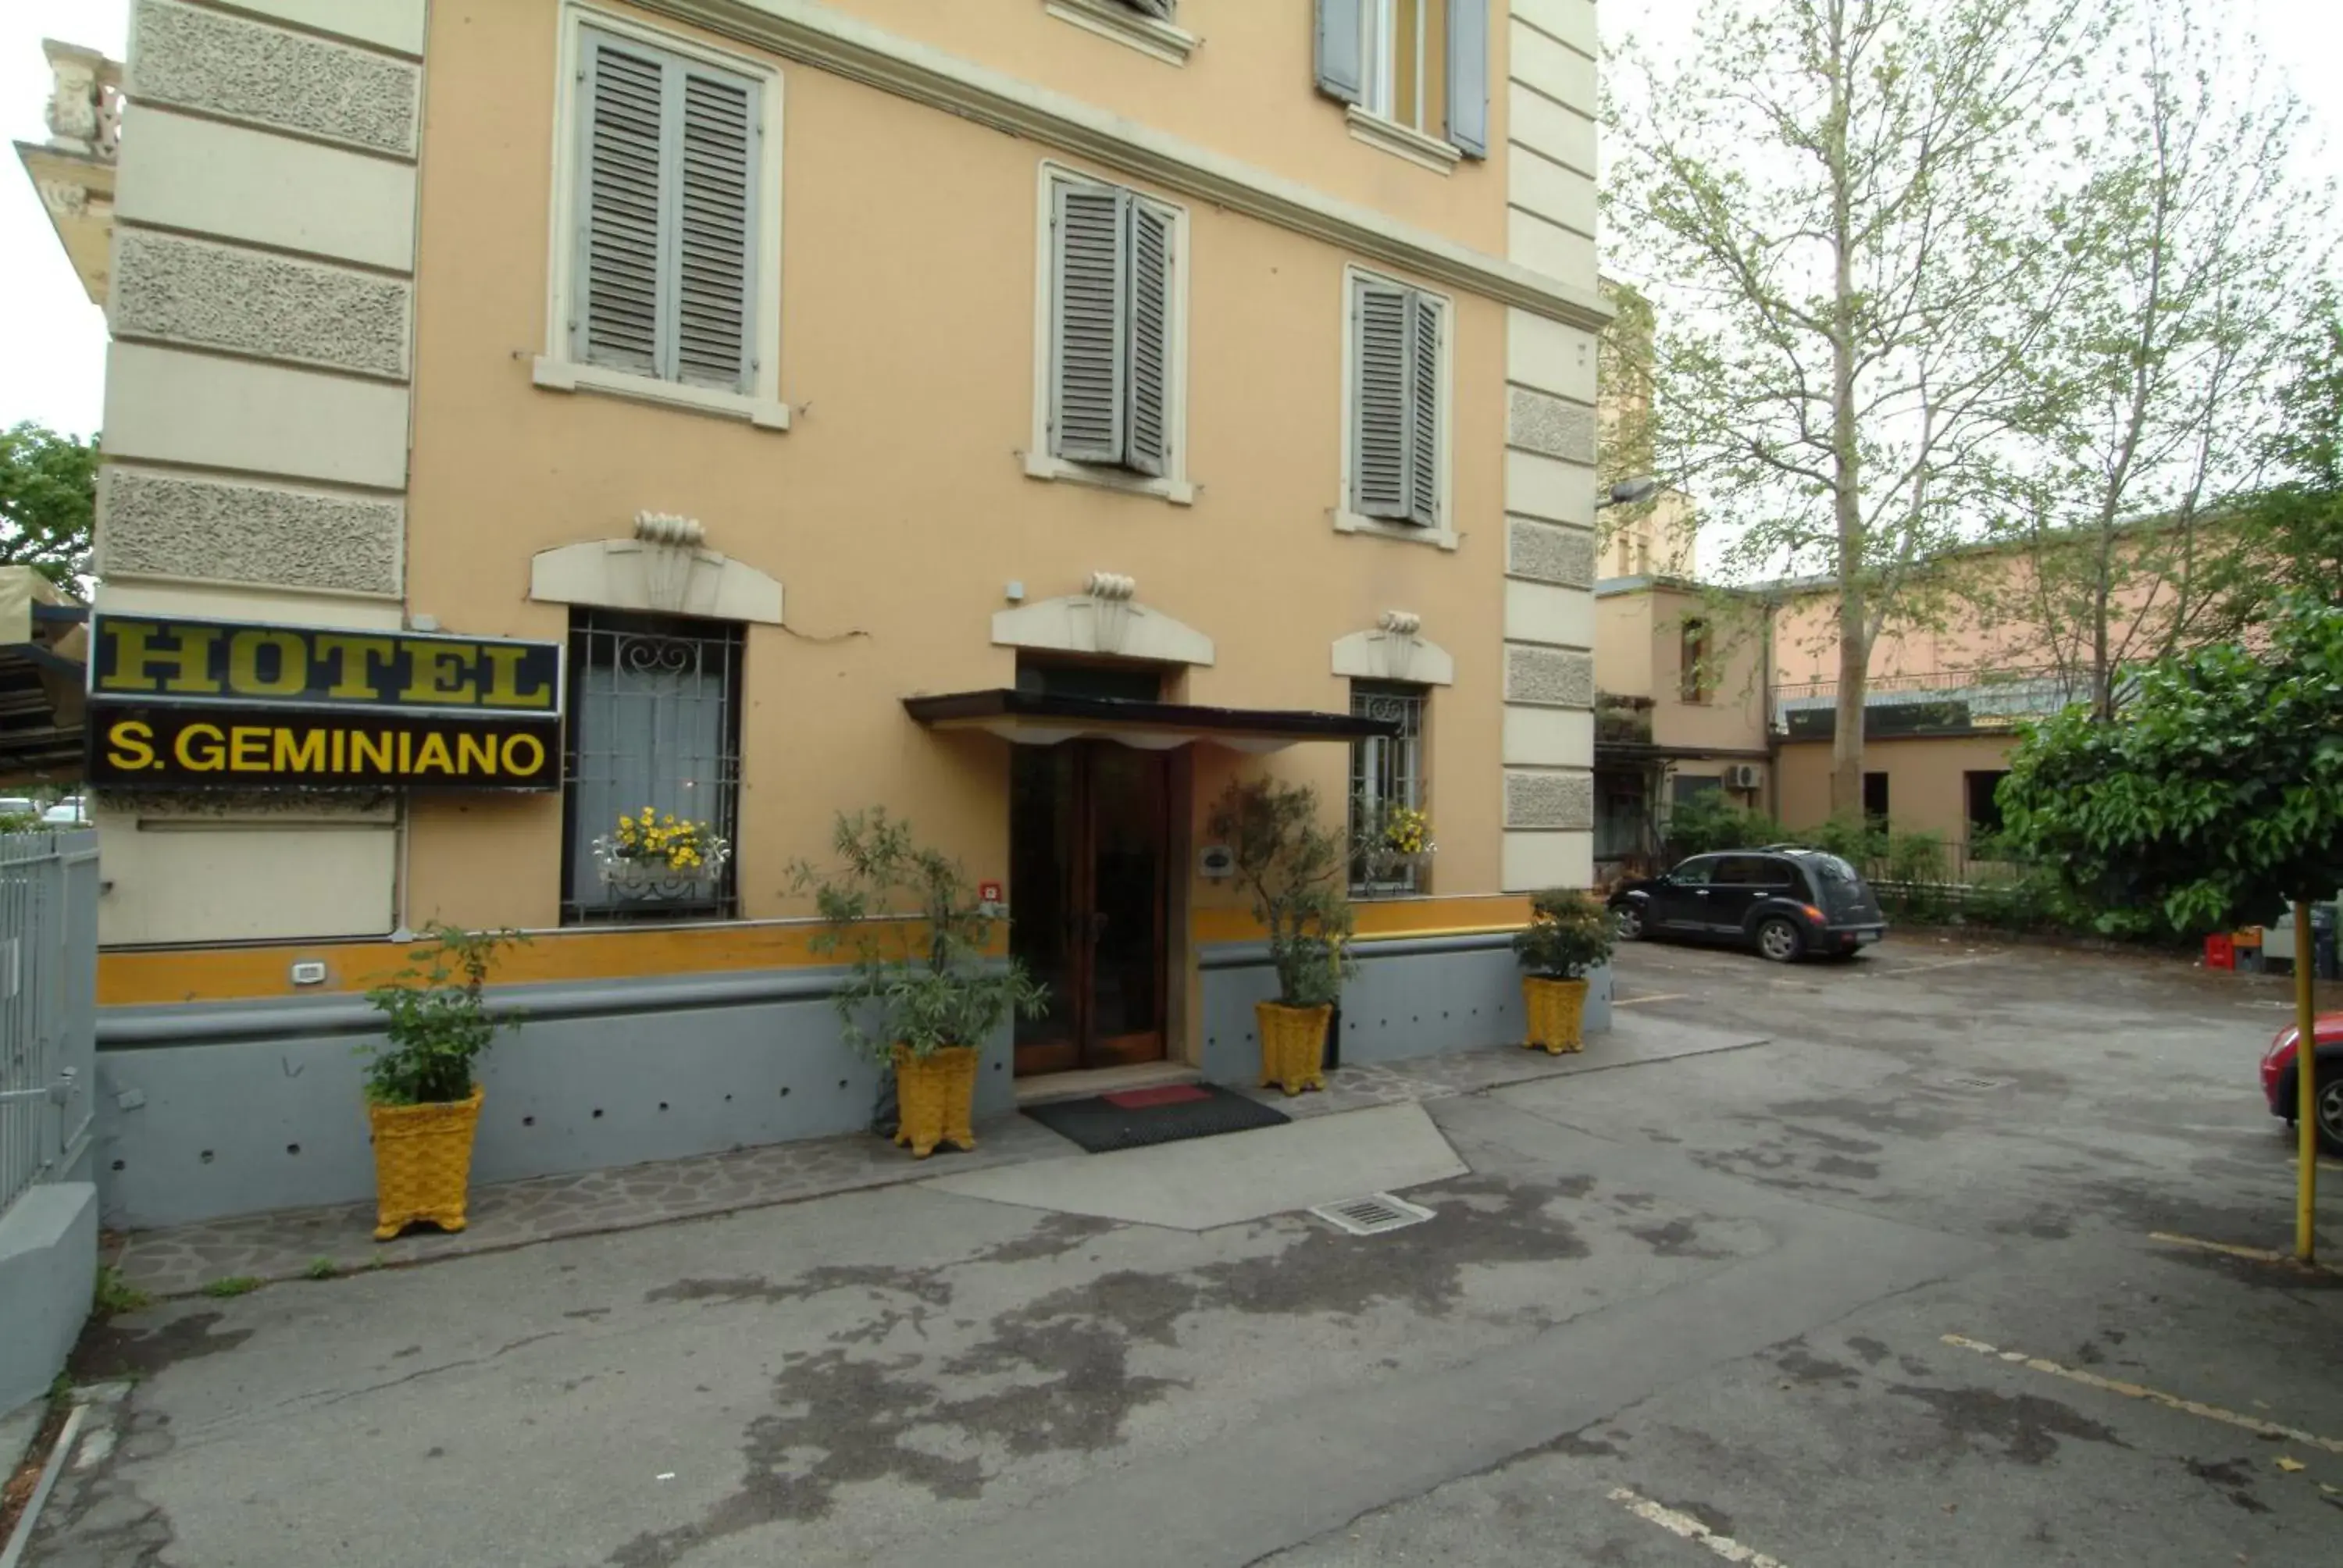 Facade/entrance, Property Building in Hotel San Geminiano